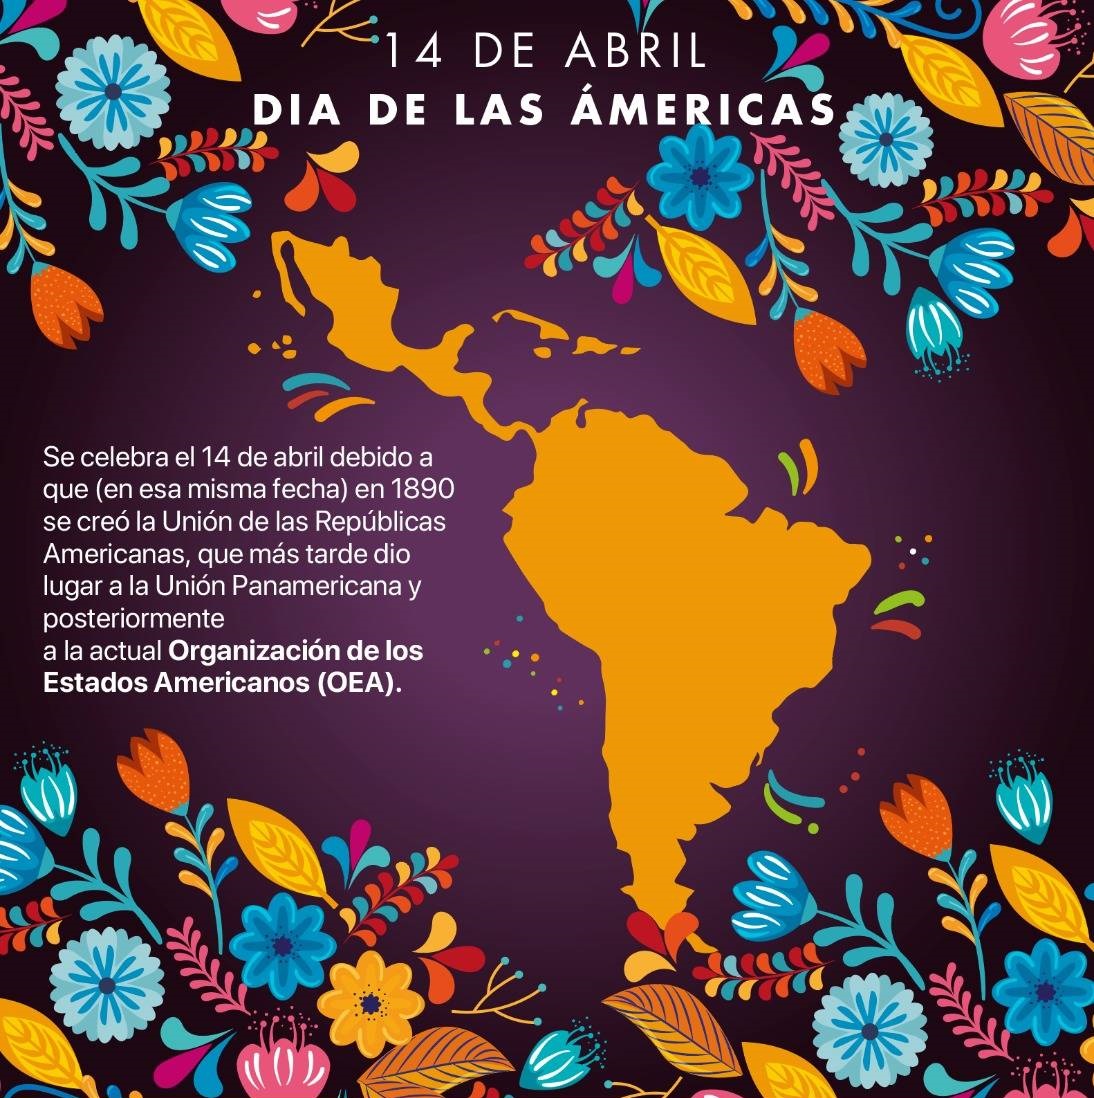 #DiaDeLasAmericas  
#14deAbril